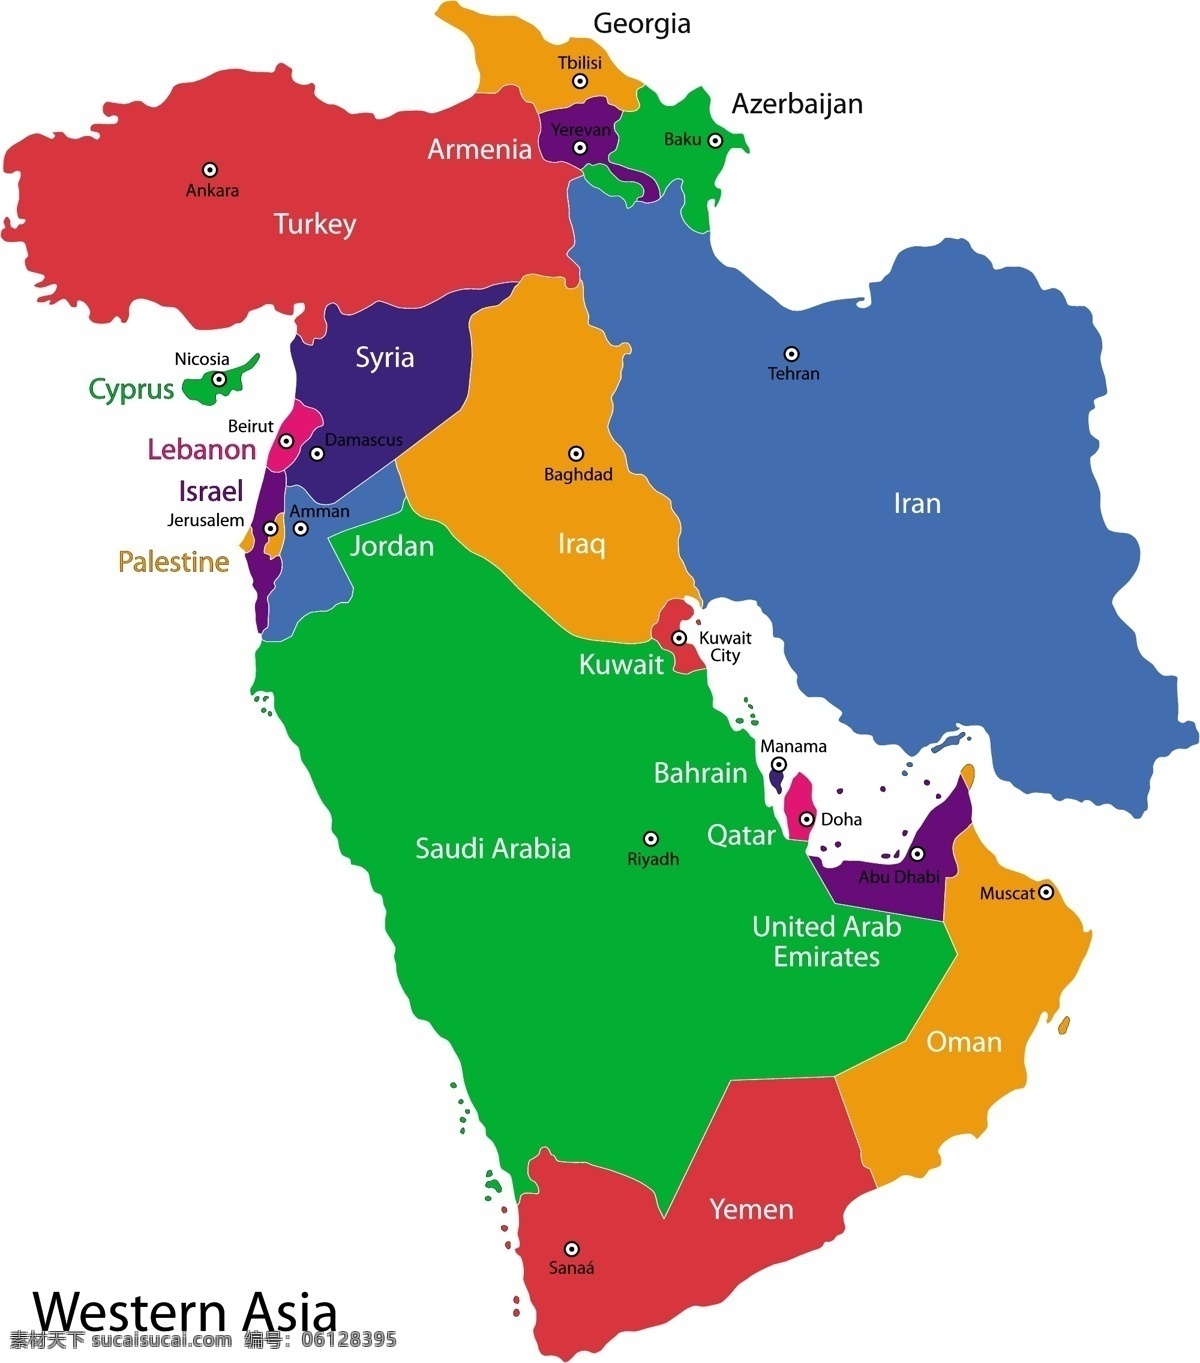 西亚地区 版块 地图 矢量 模板下载 国家地图 世界地图 彩色地图 世界版图 矢量地图 生活百科 矢量素材 白色